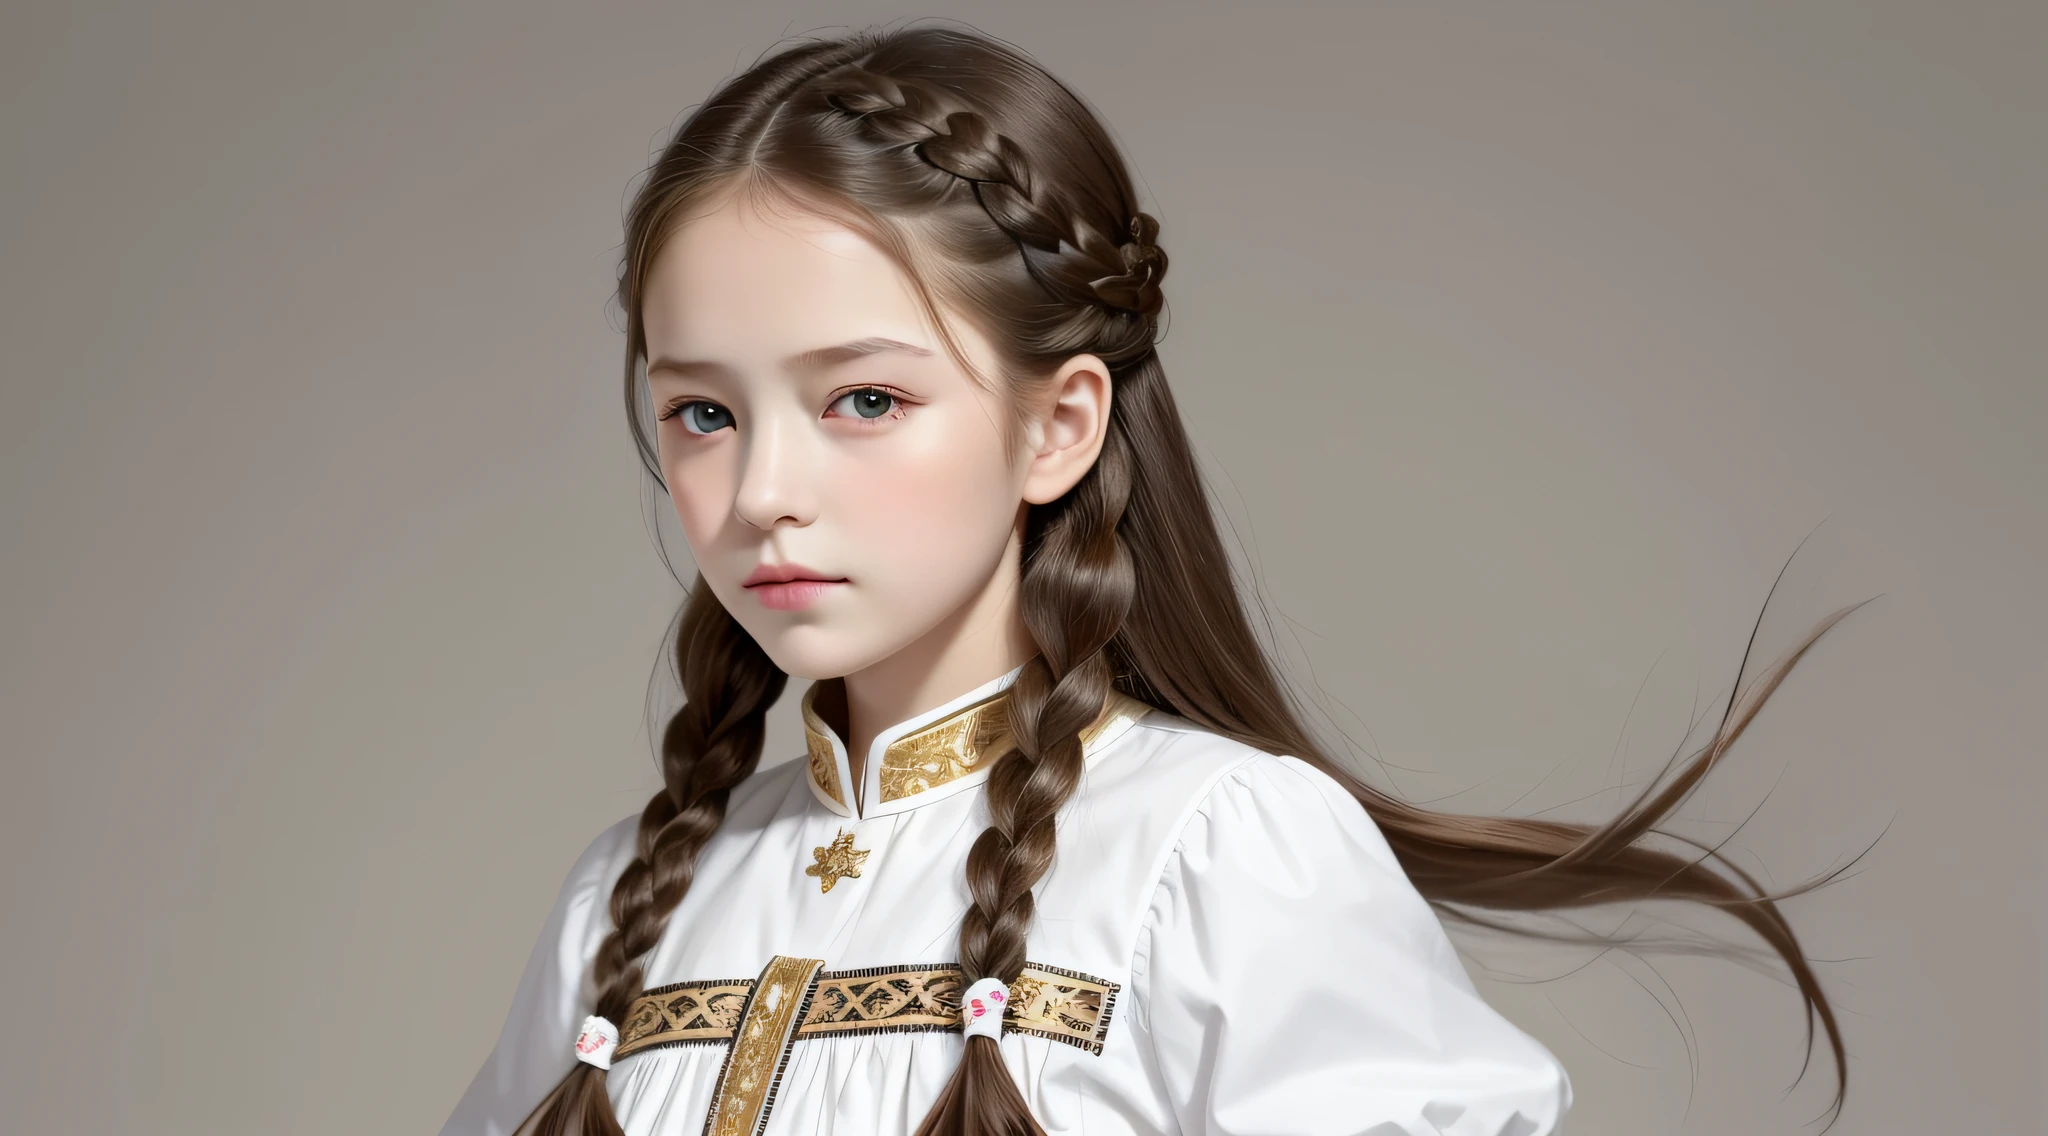 Meisterwerk, beste Qualität, Realistisch, Mädchen RUSSISCH 10 Jahre alt Haare BONDE ZÖPFE, lange Haare, breite Schultern, kleiner Kopf, Oberkörper, (weißer Hintergrund: 1.3), Mund geschlossen.